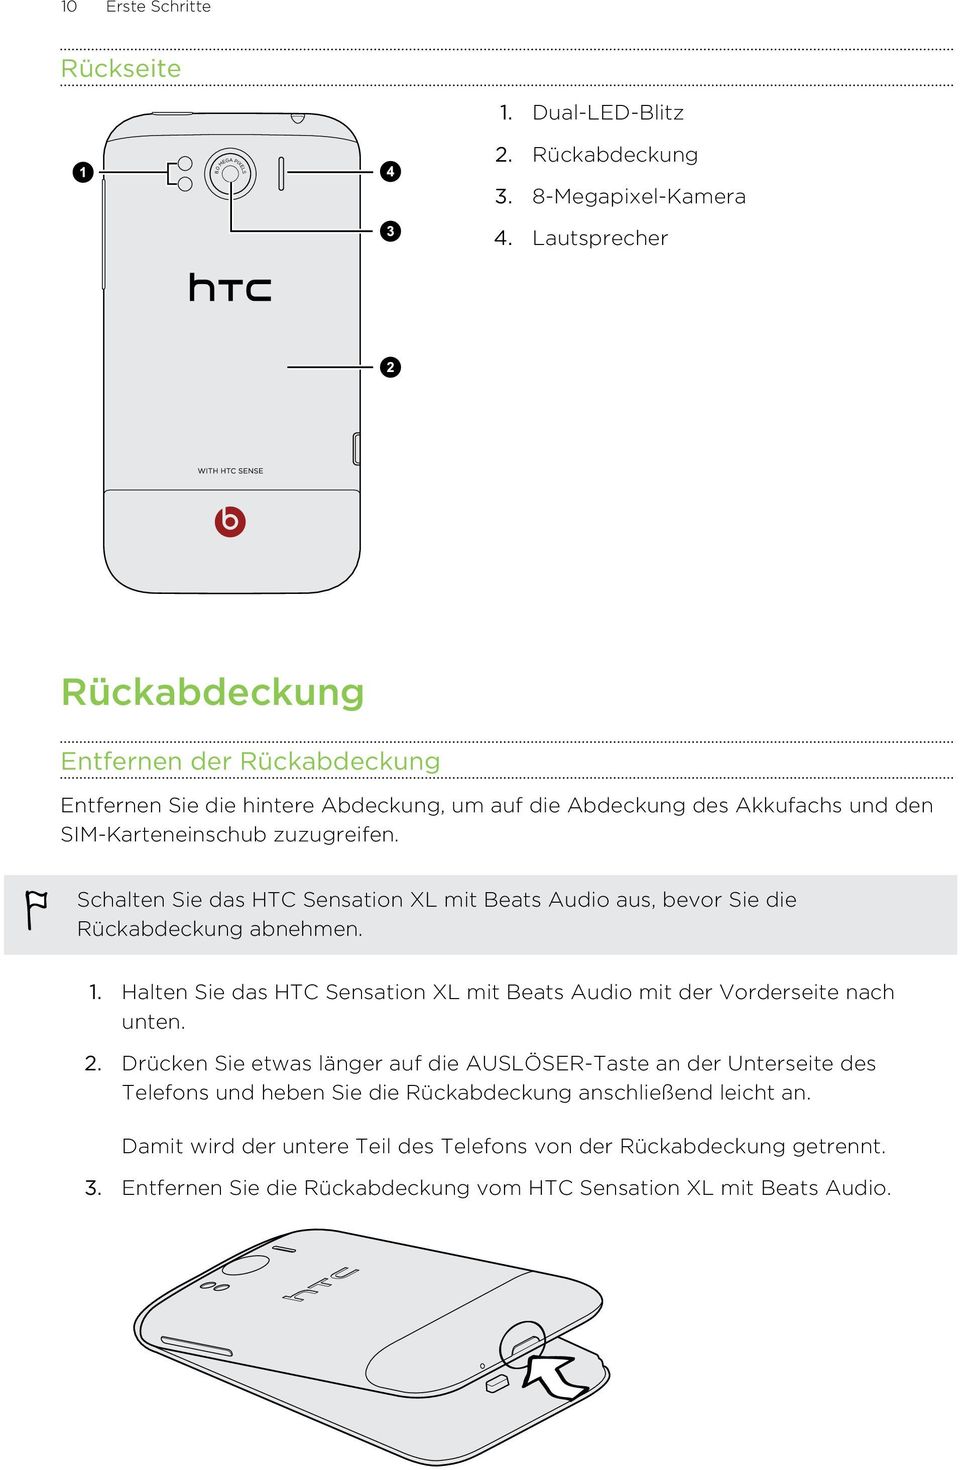 Schalten Sie das HTC Sensation XL mit Beats Audio aus, bevor Sie die Rückabdeckung abnehmen. 1. Halten Sie das HTC Sensation XL mit Beats Audio mit der Vorderseite nach unten. 2.